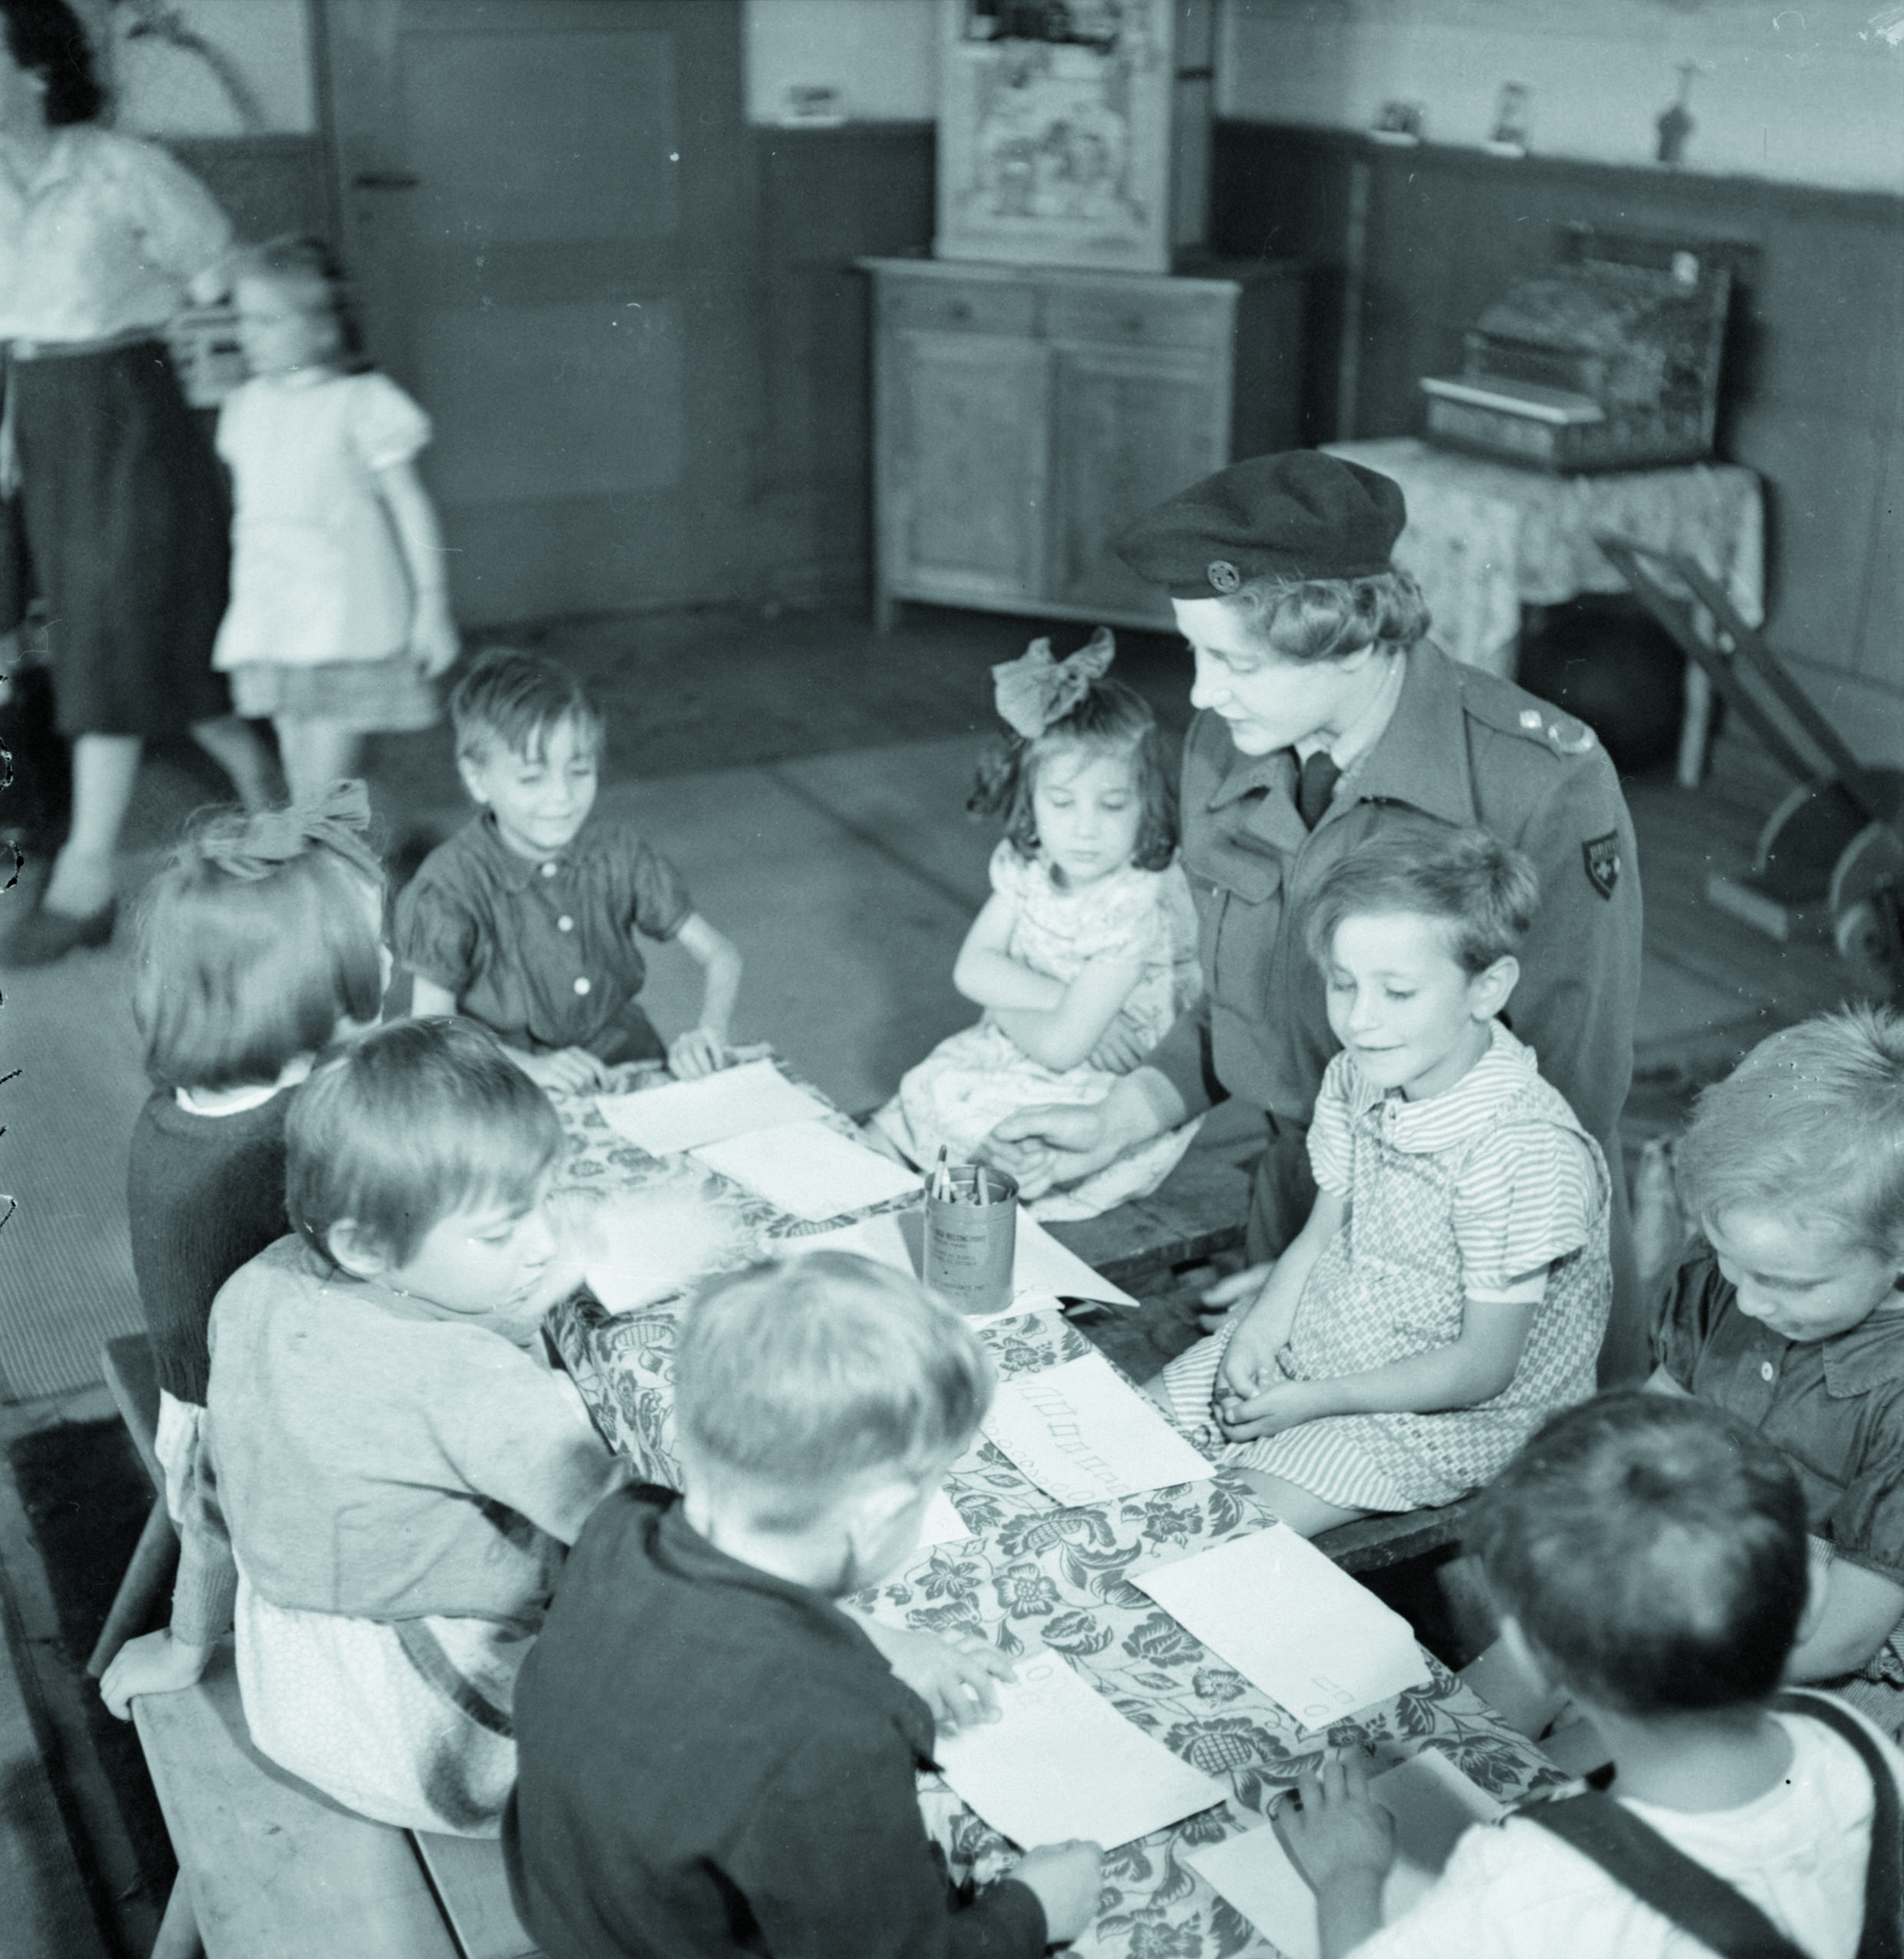 Bergen-Belsen, giugno 1946, Displaced Persons Camp per ebrei: bambini orfani sopravvissuti assistiti in un asilo nido. Il DP Camp ebraico accoglie fino a 12.000 persone che attendono di poter emigrare. Il campo viene sciolto nel 1950